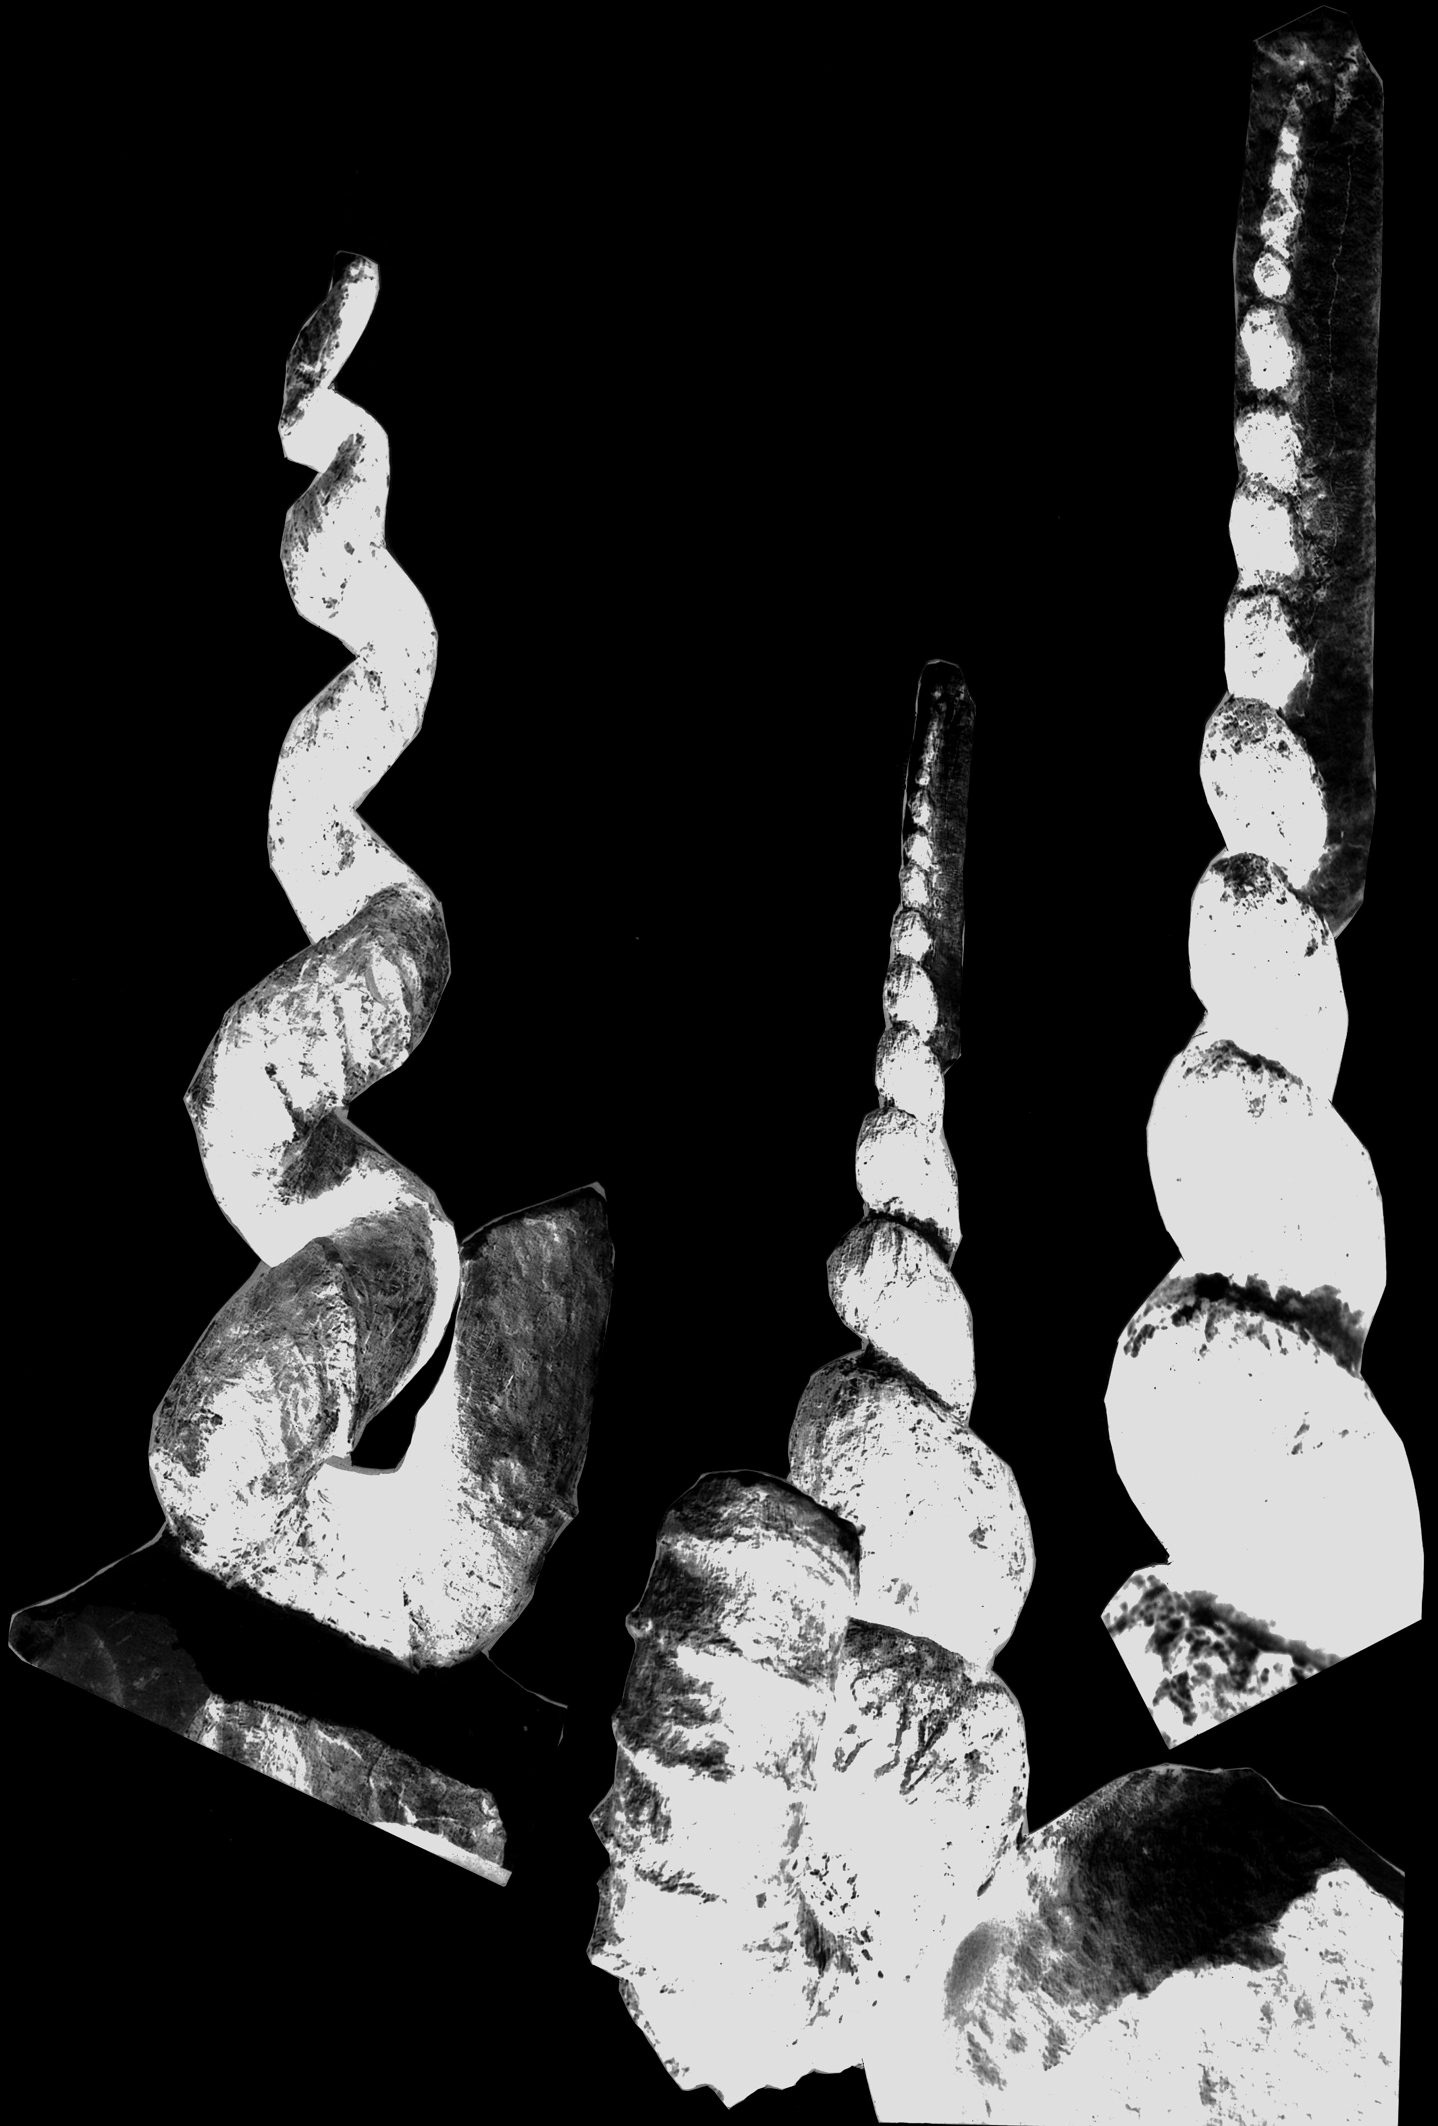 Gehäusegestalt von Hyphantoceras reussianum Tafel 1 Abb. 1: Hyphantoceras reussianum (D Orbigny), Makrokonch, Länge 26,5 cm. Ober-Turonium, Halle/Westf., Slg. M. Sowiak, Inv.